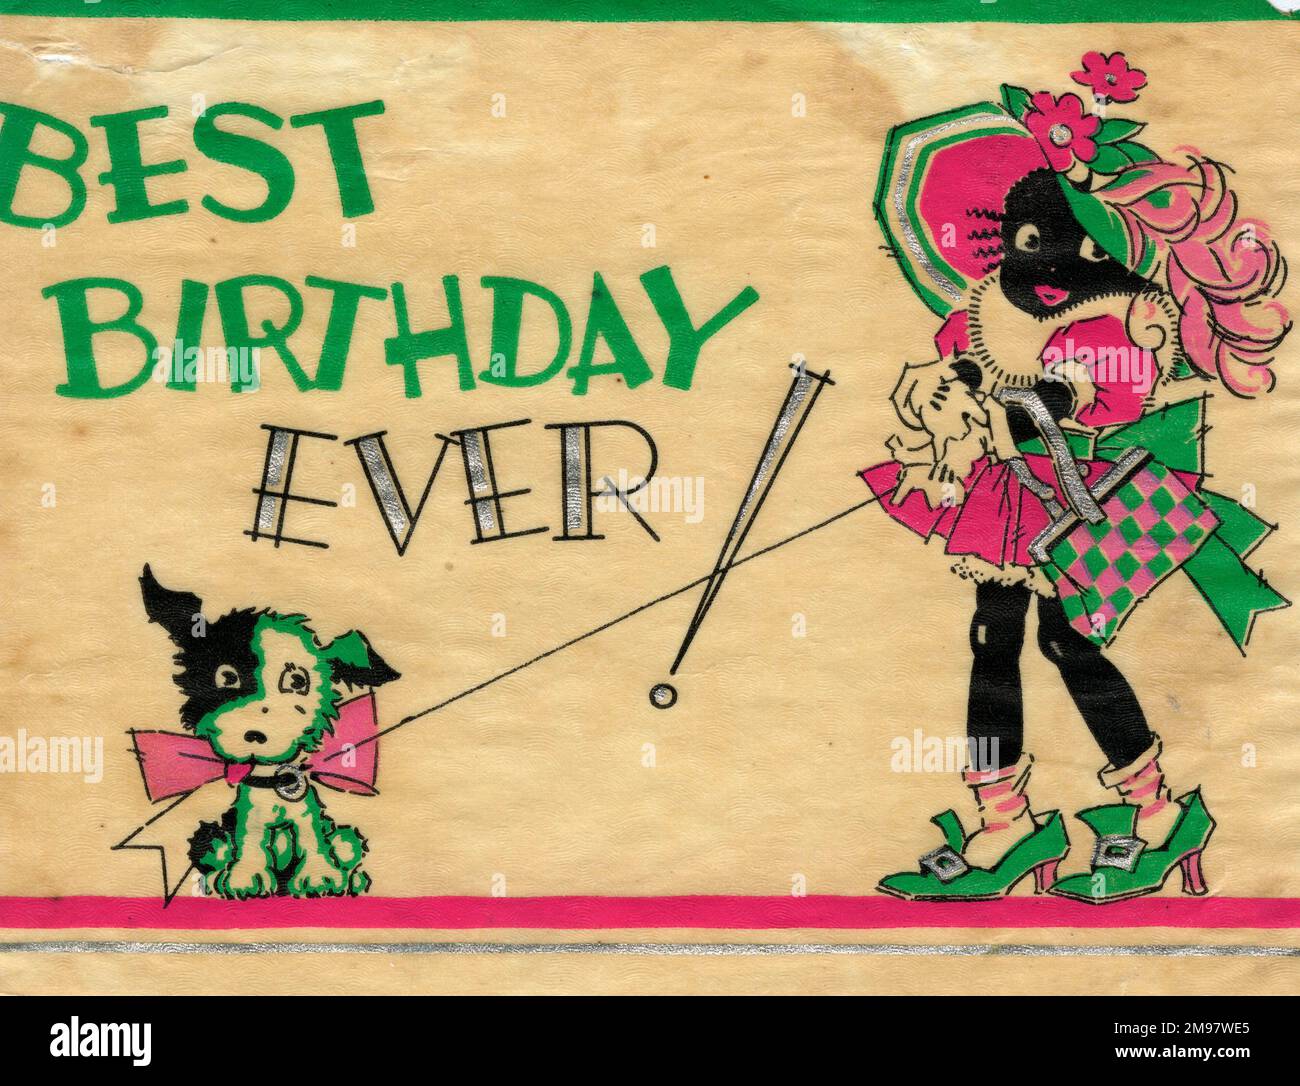 Geburtstagskarte - Bester Geburtstag aller Zeiten! Ein kleines Mädchen und ihr kleiner Hund. Stockfoto